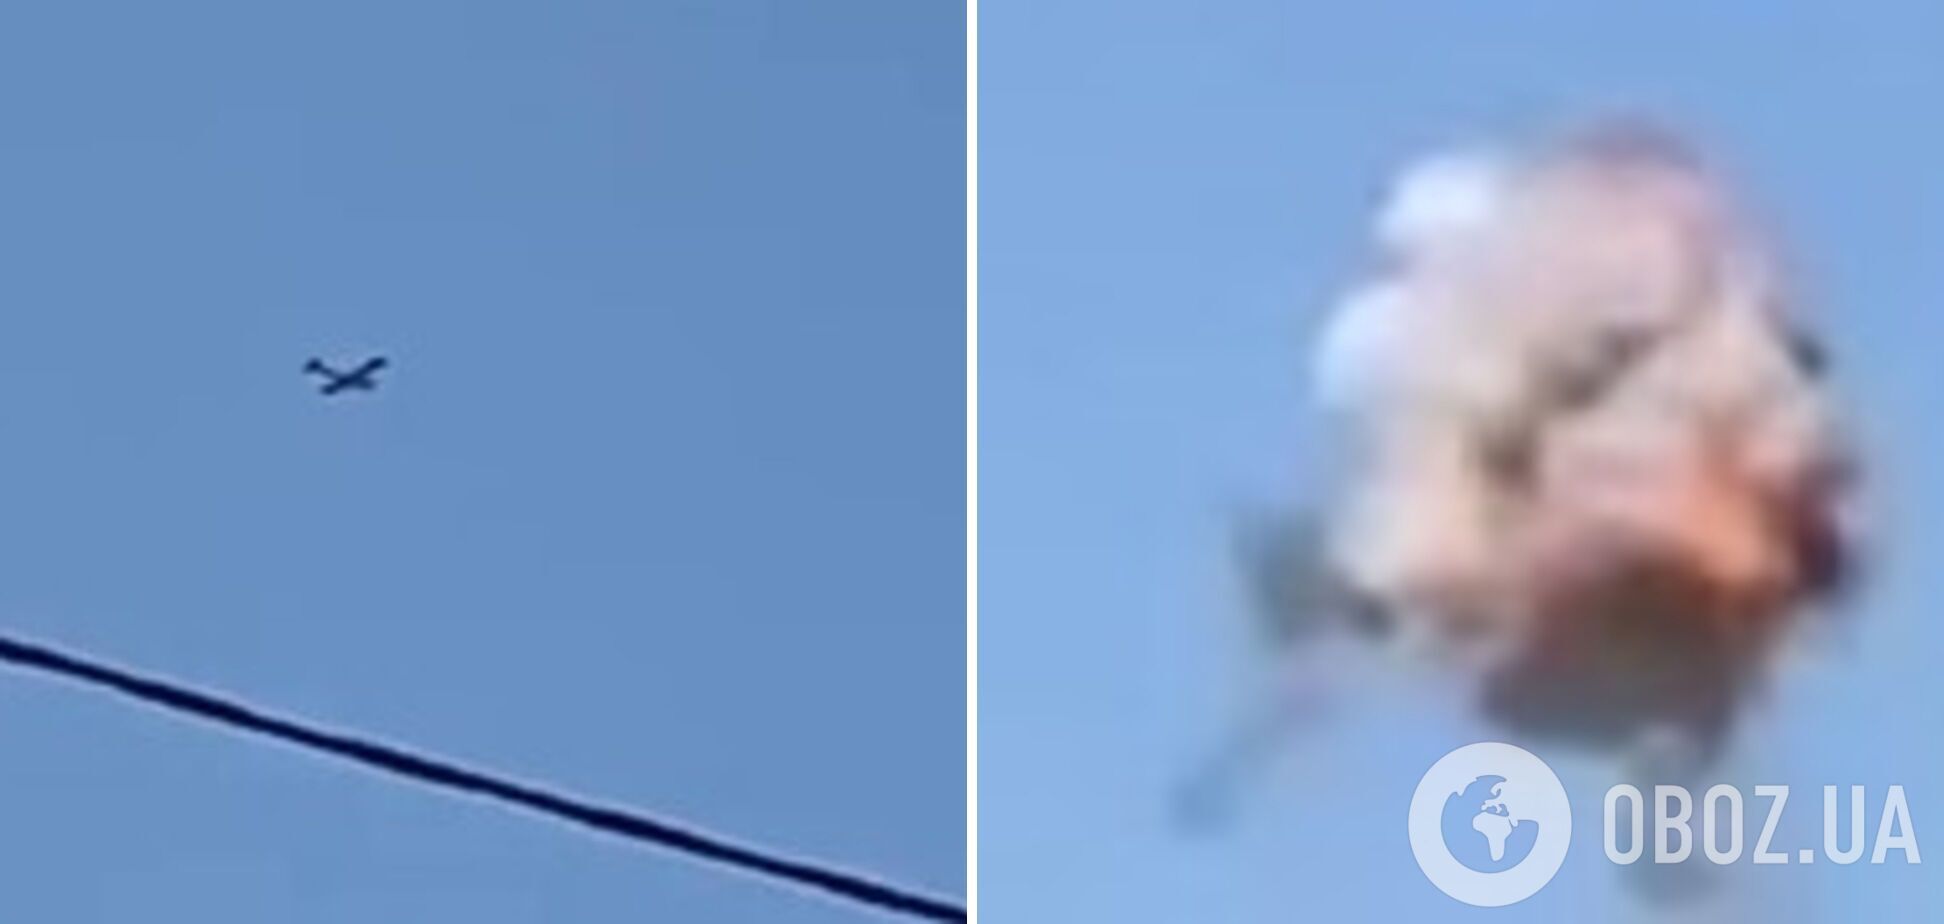 "Очень шумно": в Брянске пожаловались на новую атаку дронов, прогремели взрывы. Видео